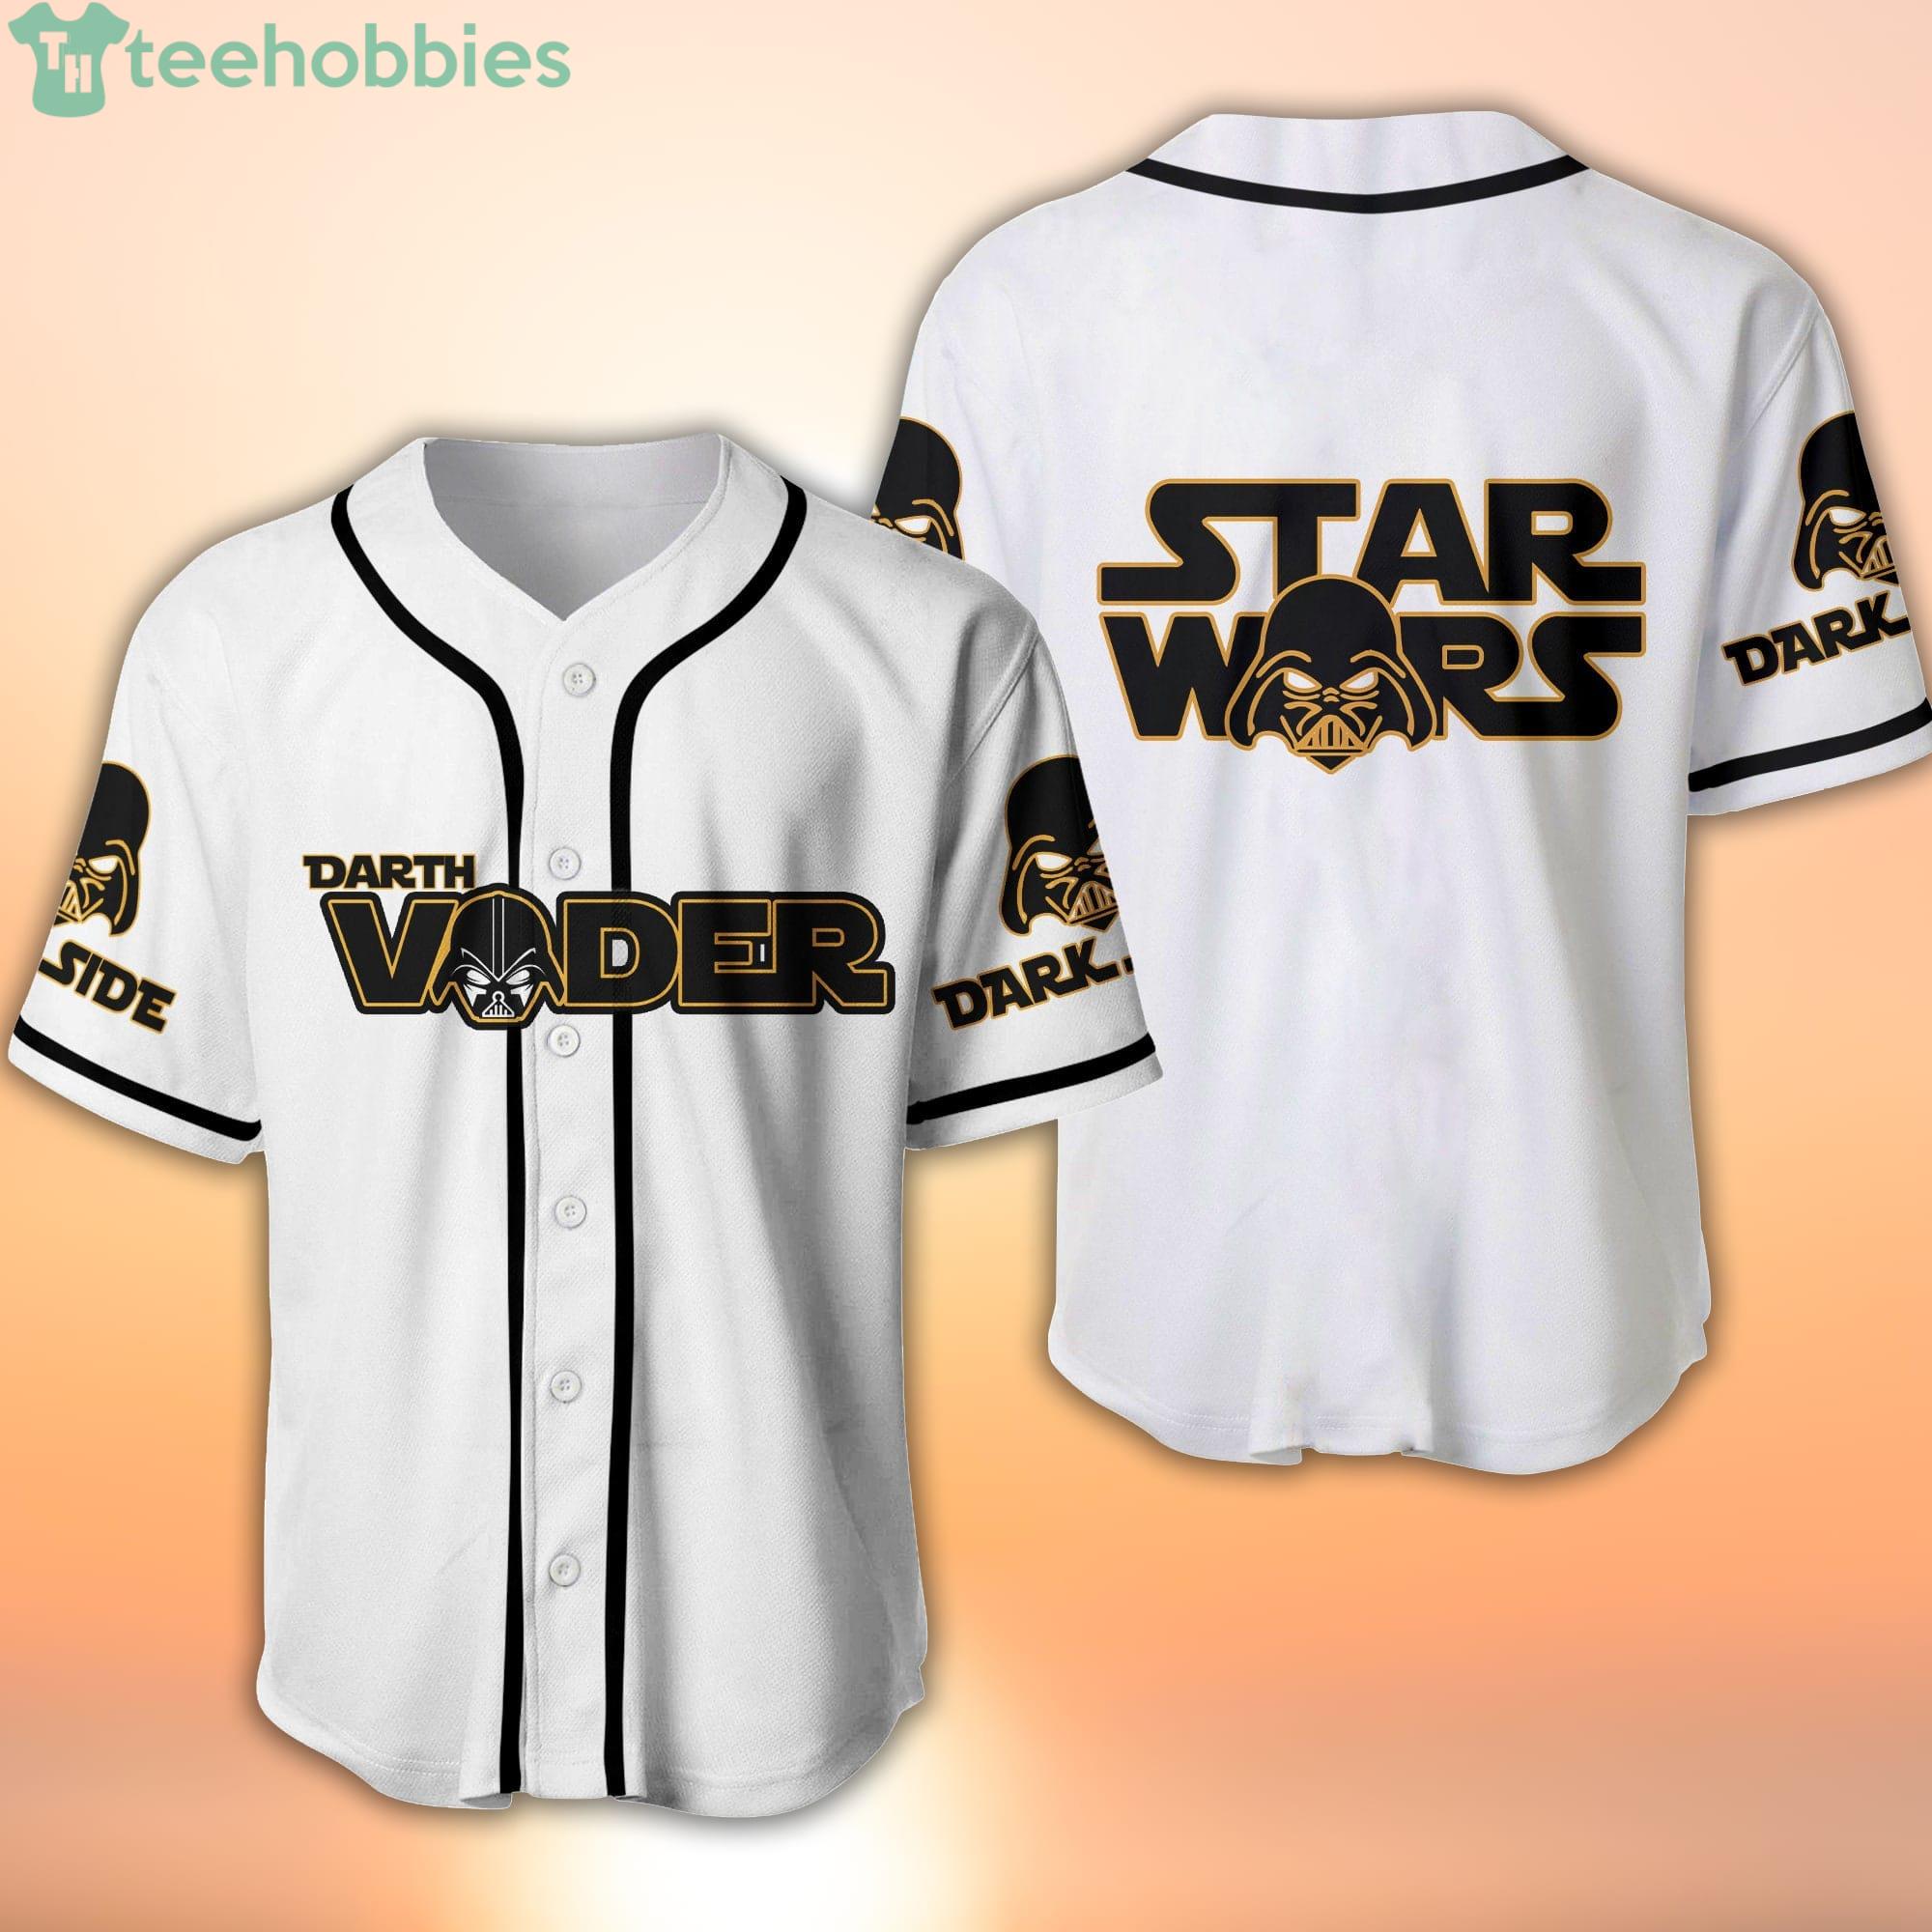 Darth Vader Baltimore Orioles shirt Star Wars t-shirt baseball O's MLB